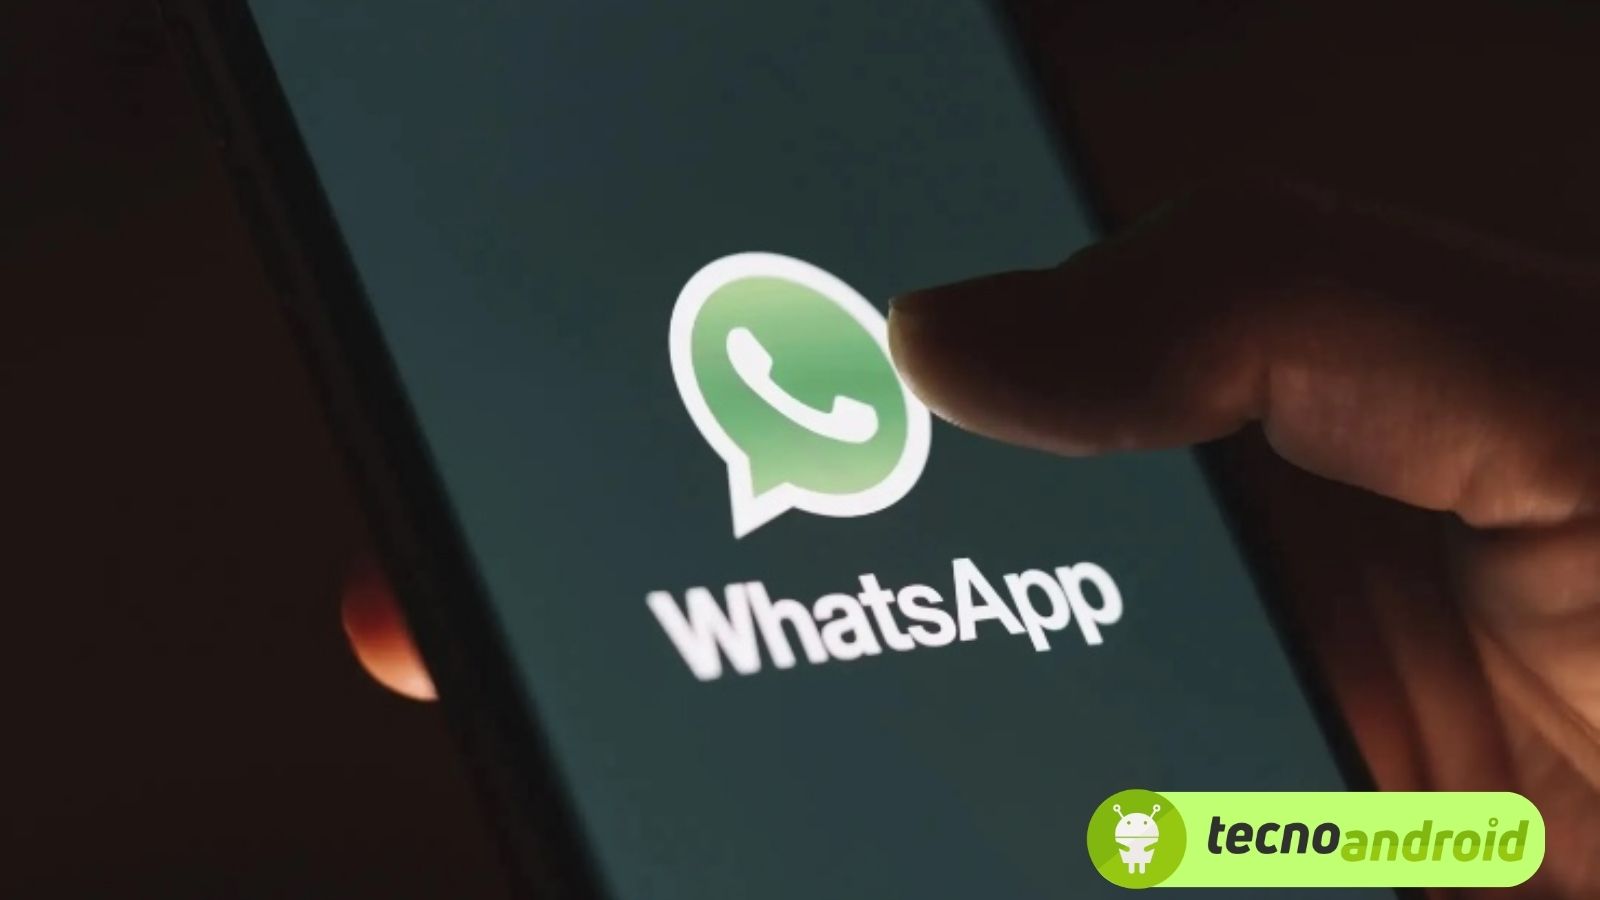 WhatsApp: ecco come inviare foto e video in HD